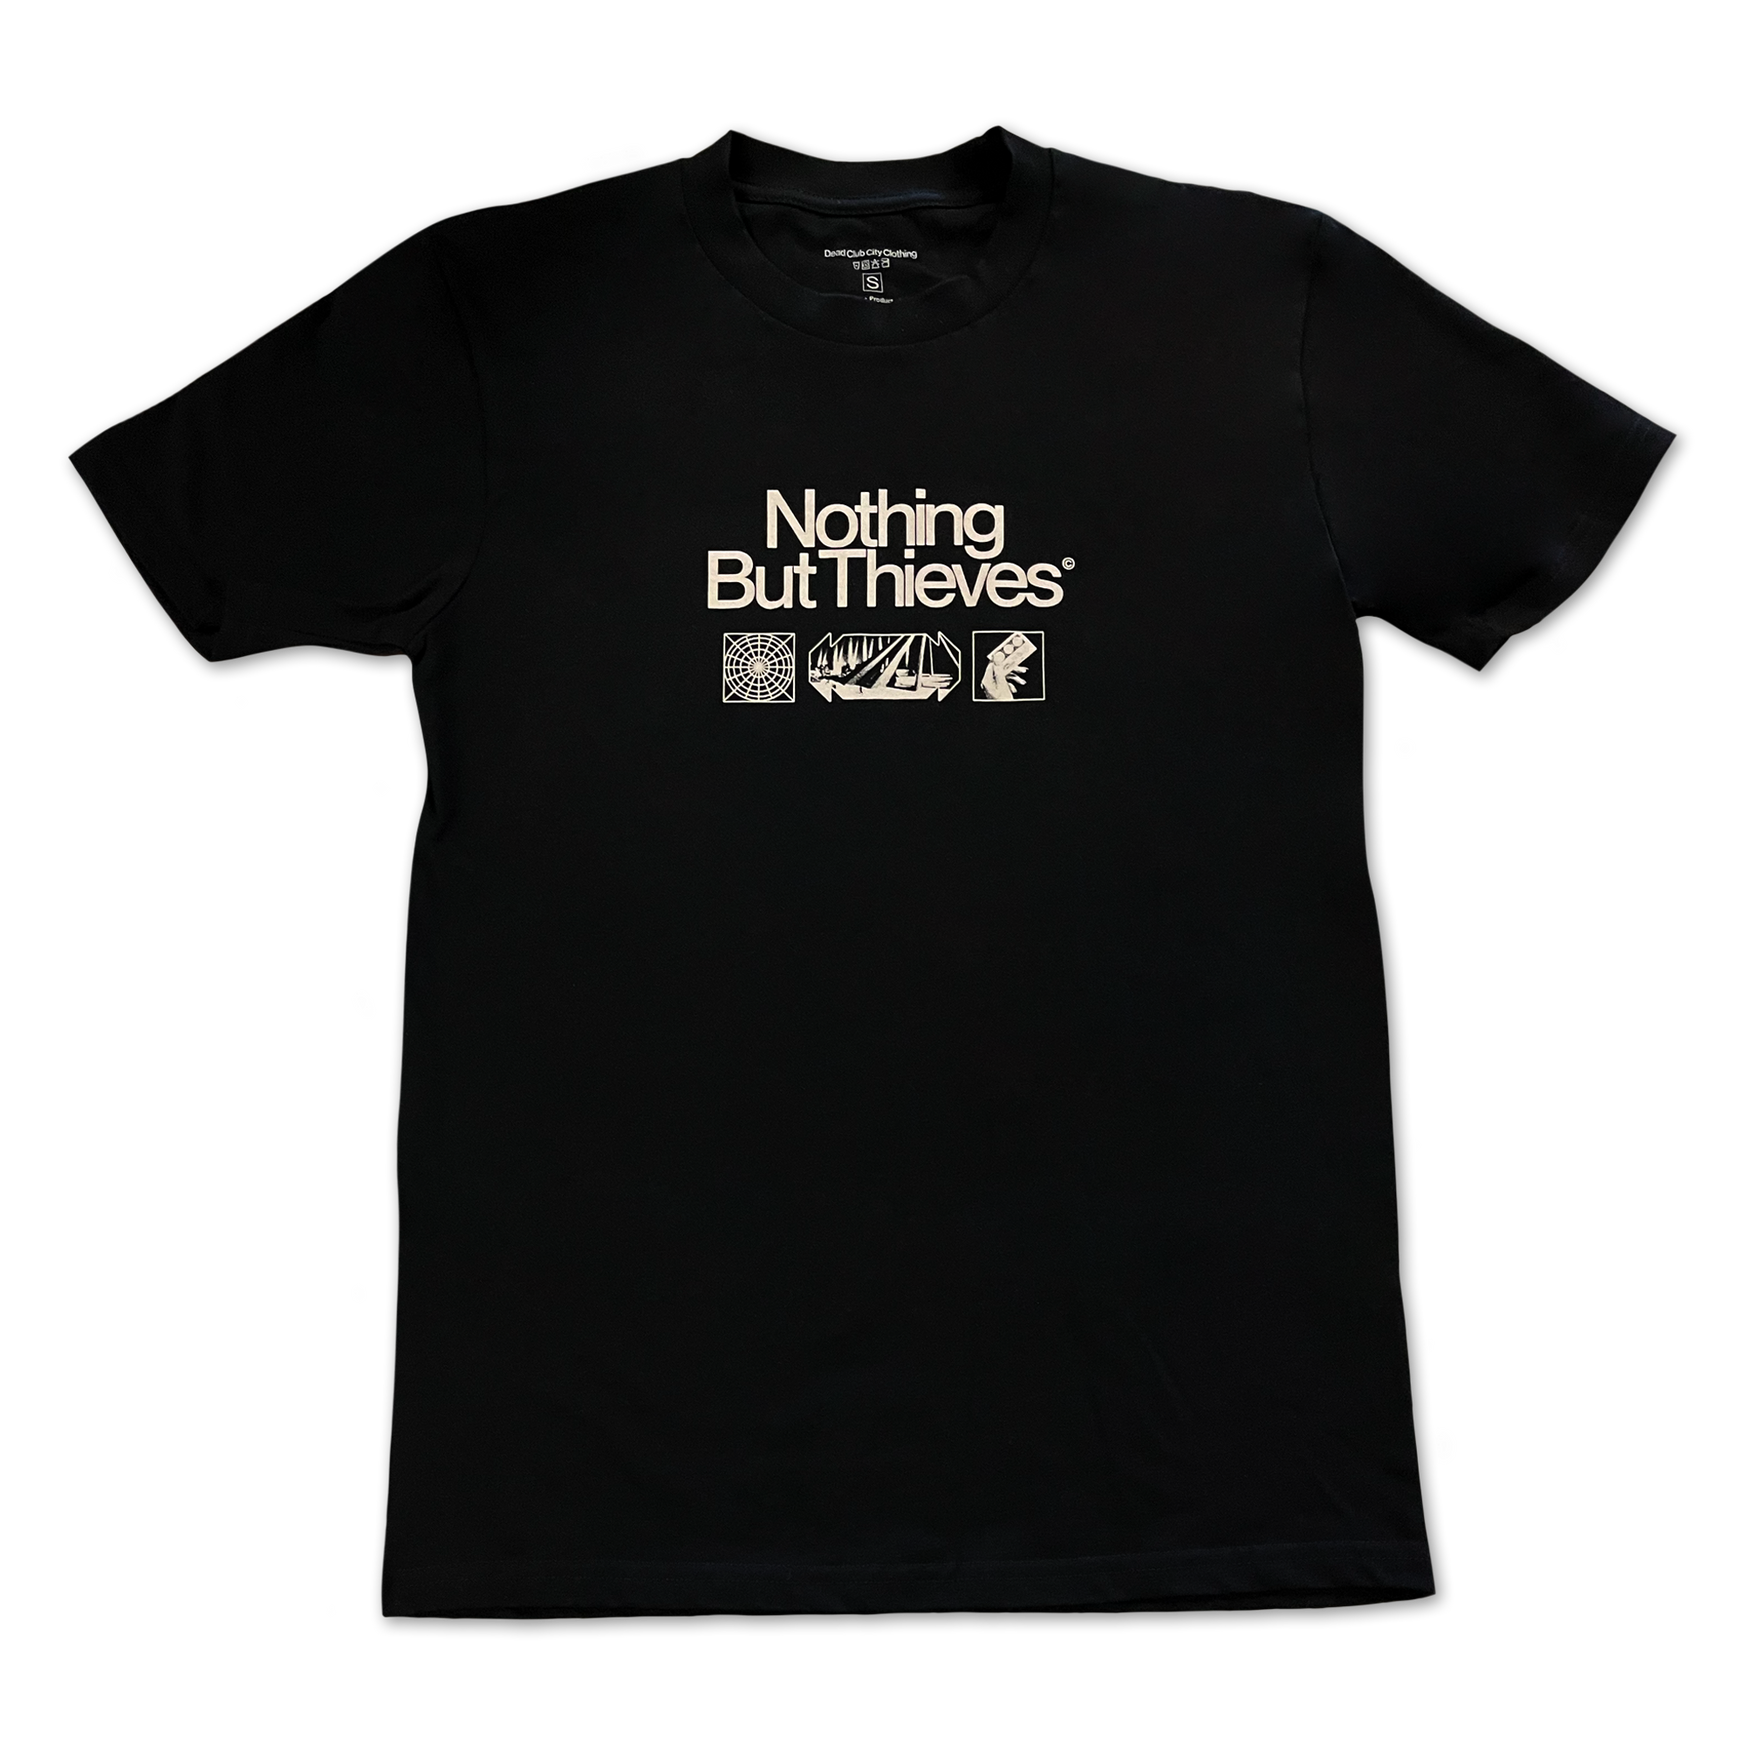 DCC 2023 US Tour (Black) T-shirt